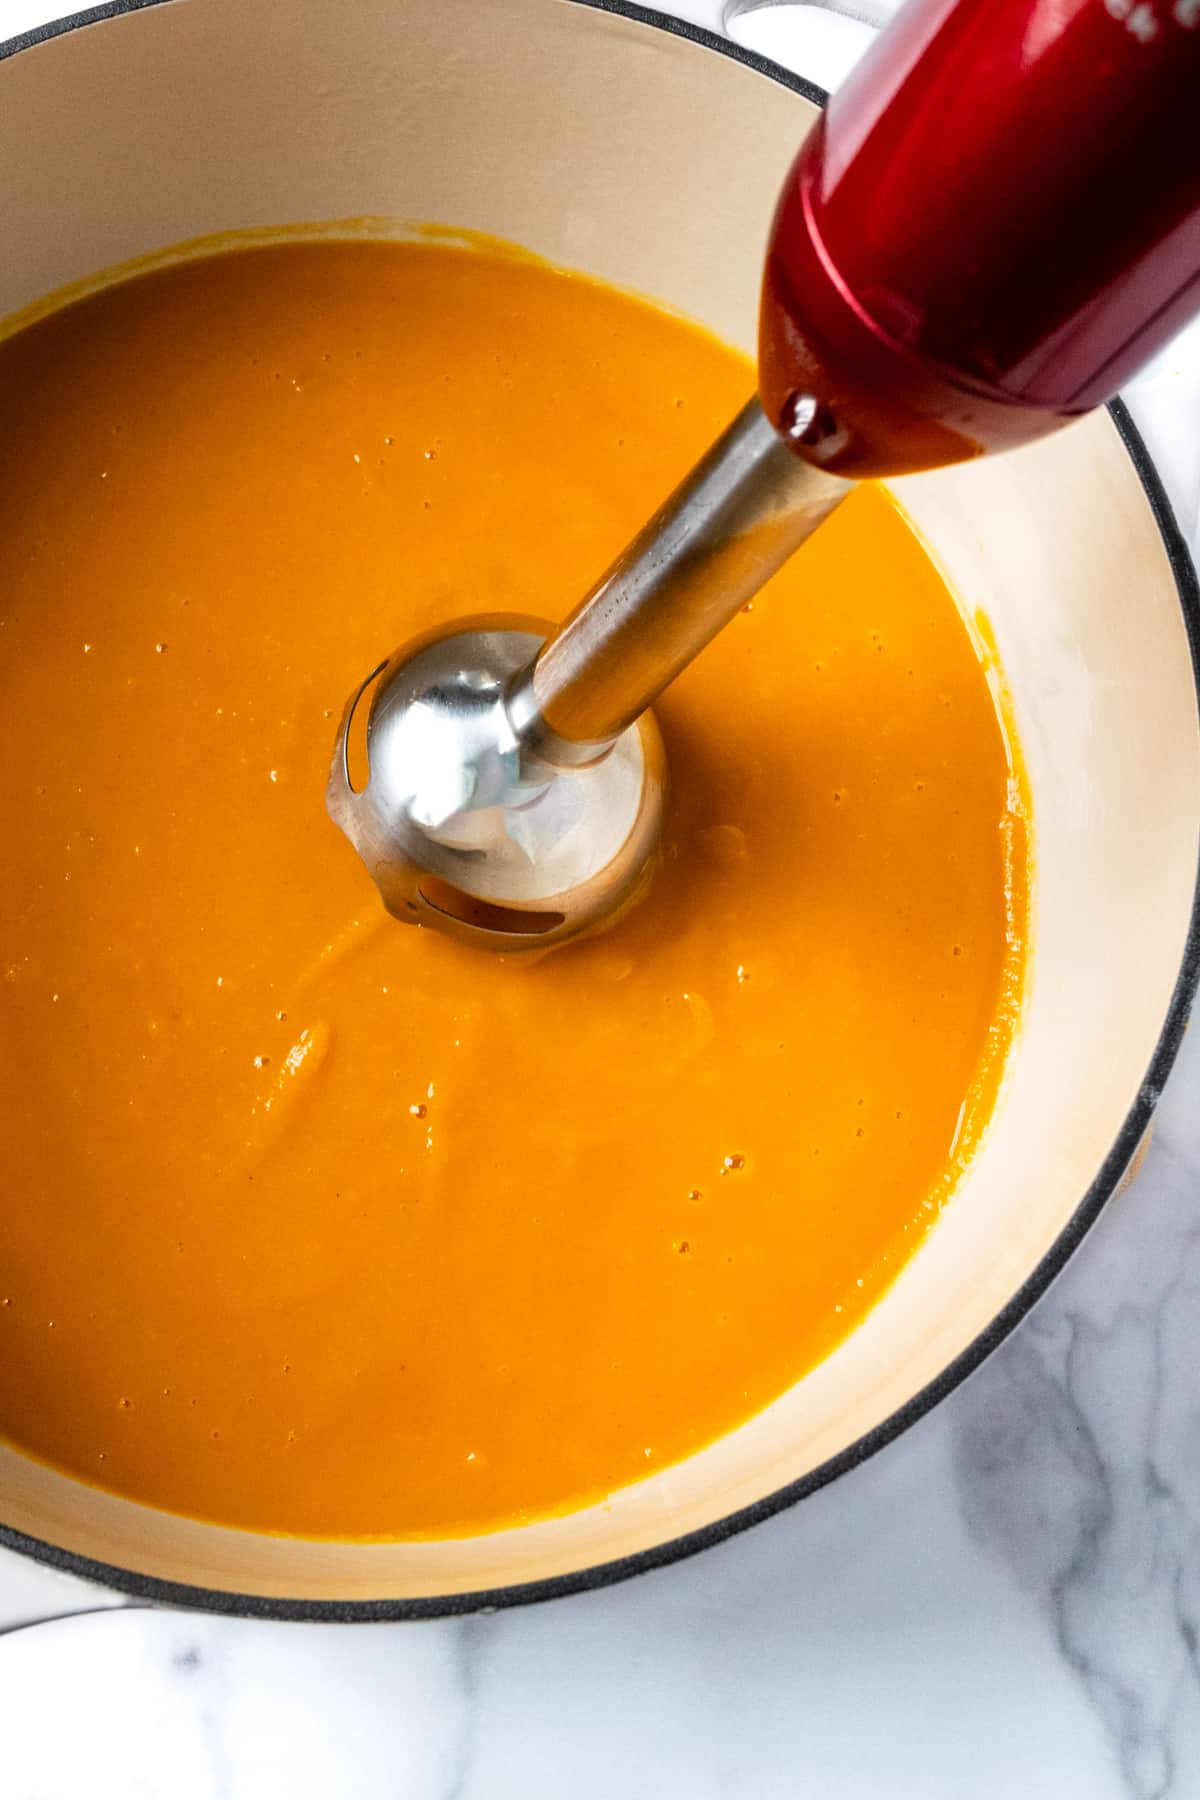 Immersion blender blending squash soup in a white pot.